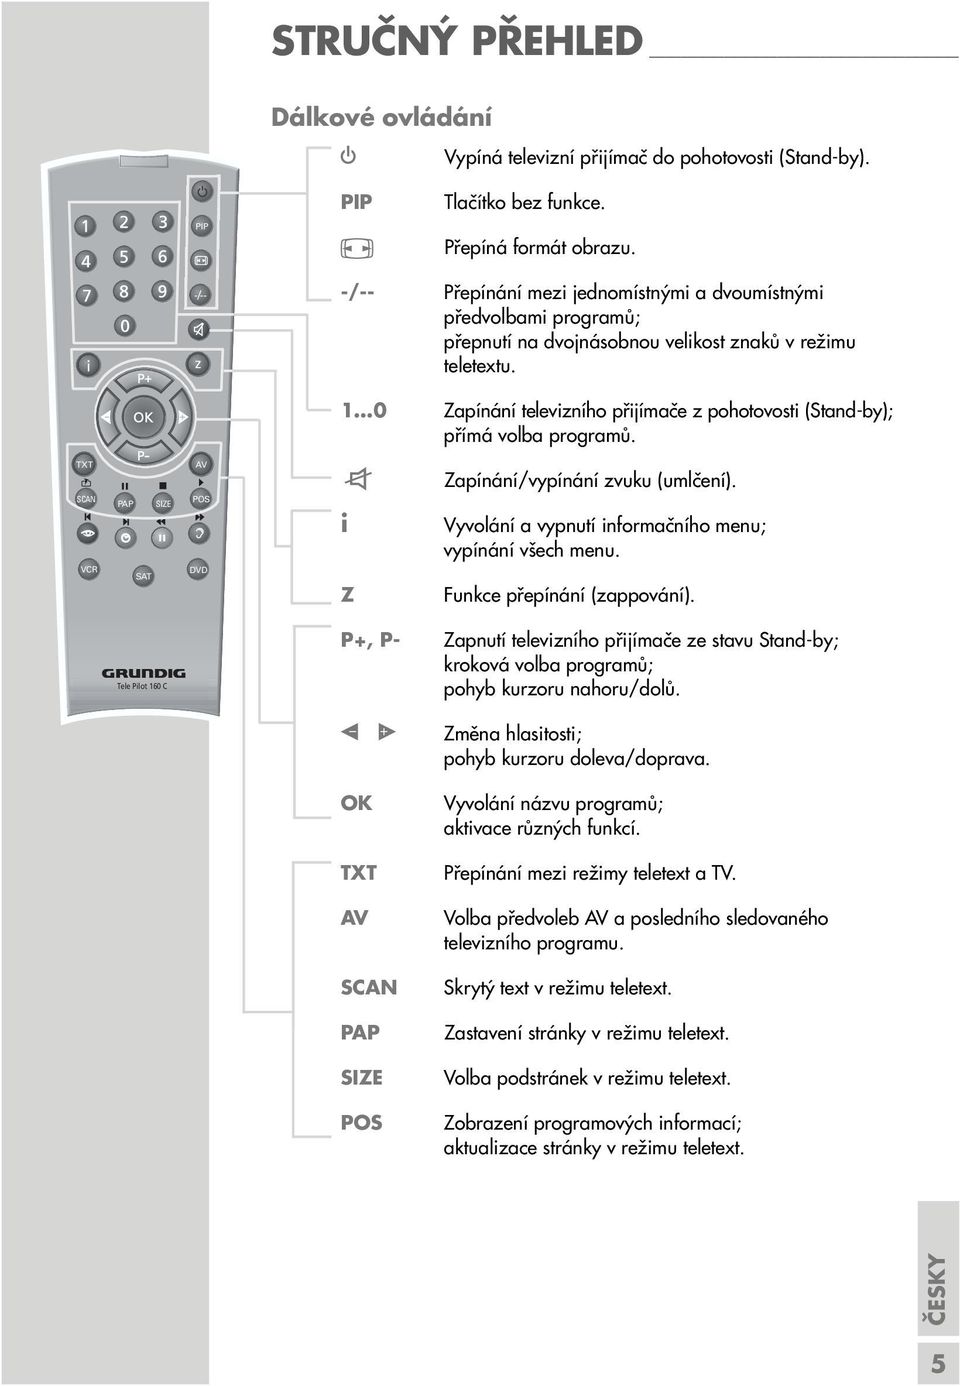 1 0 ínání televizního přijímače z pohotovosti (Stand-by); přímá volba programů. TXT SCAN VCR PAP SIZE SAT AV POS d DVD d i Z ínání/vypínání zvuku (umlčení).